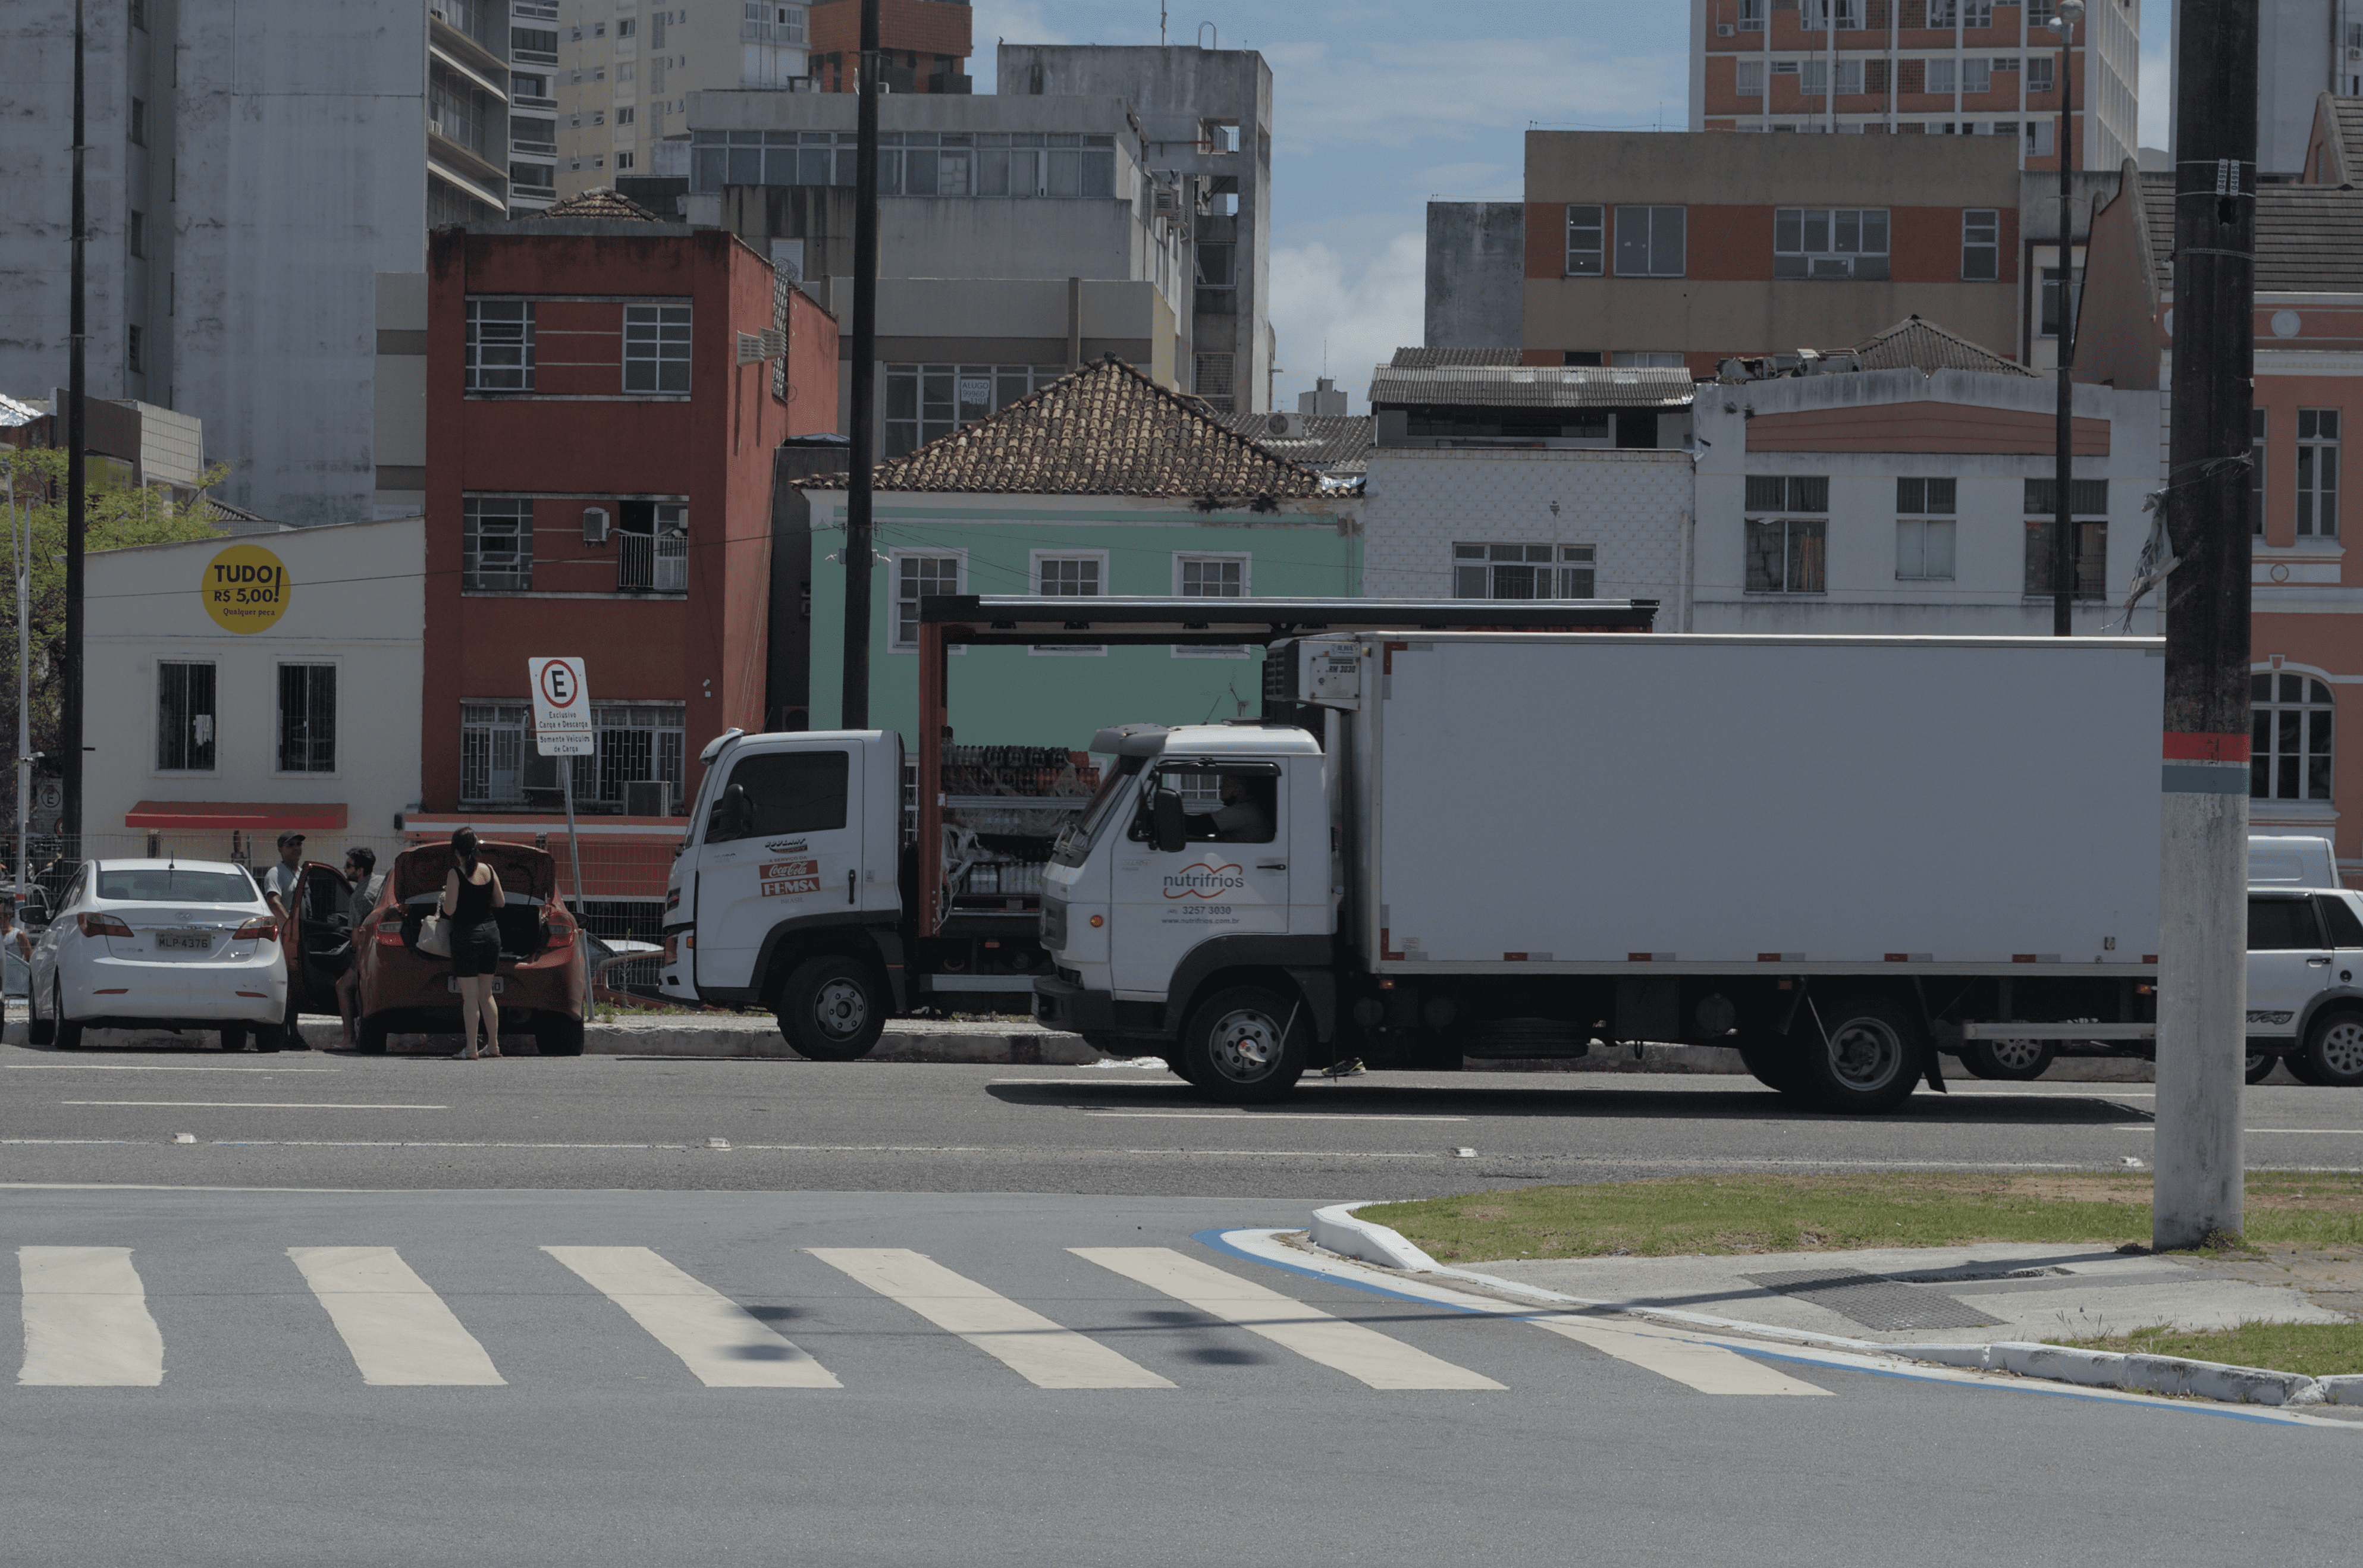 Os piores caminhões lançados no Brasil